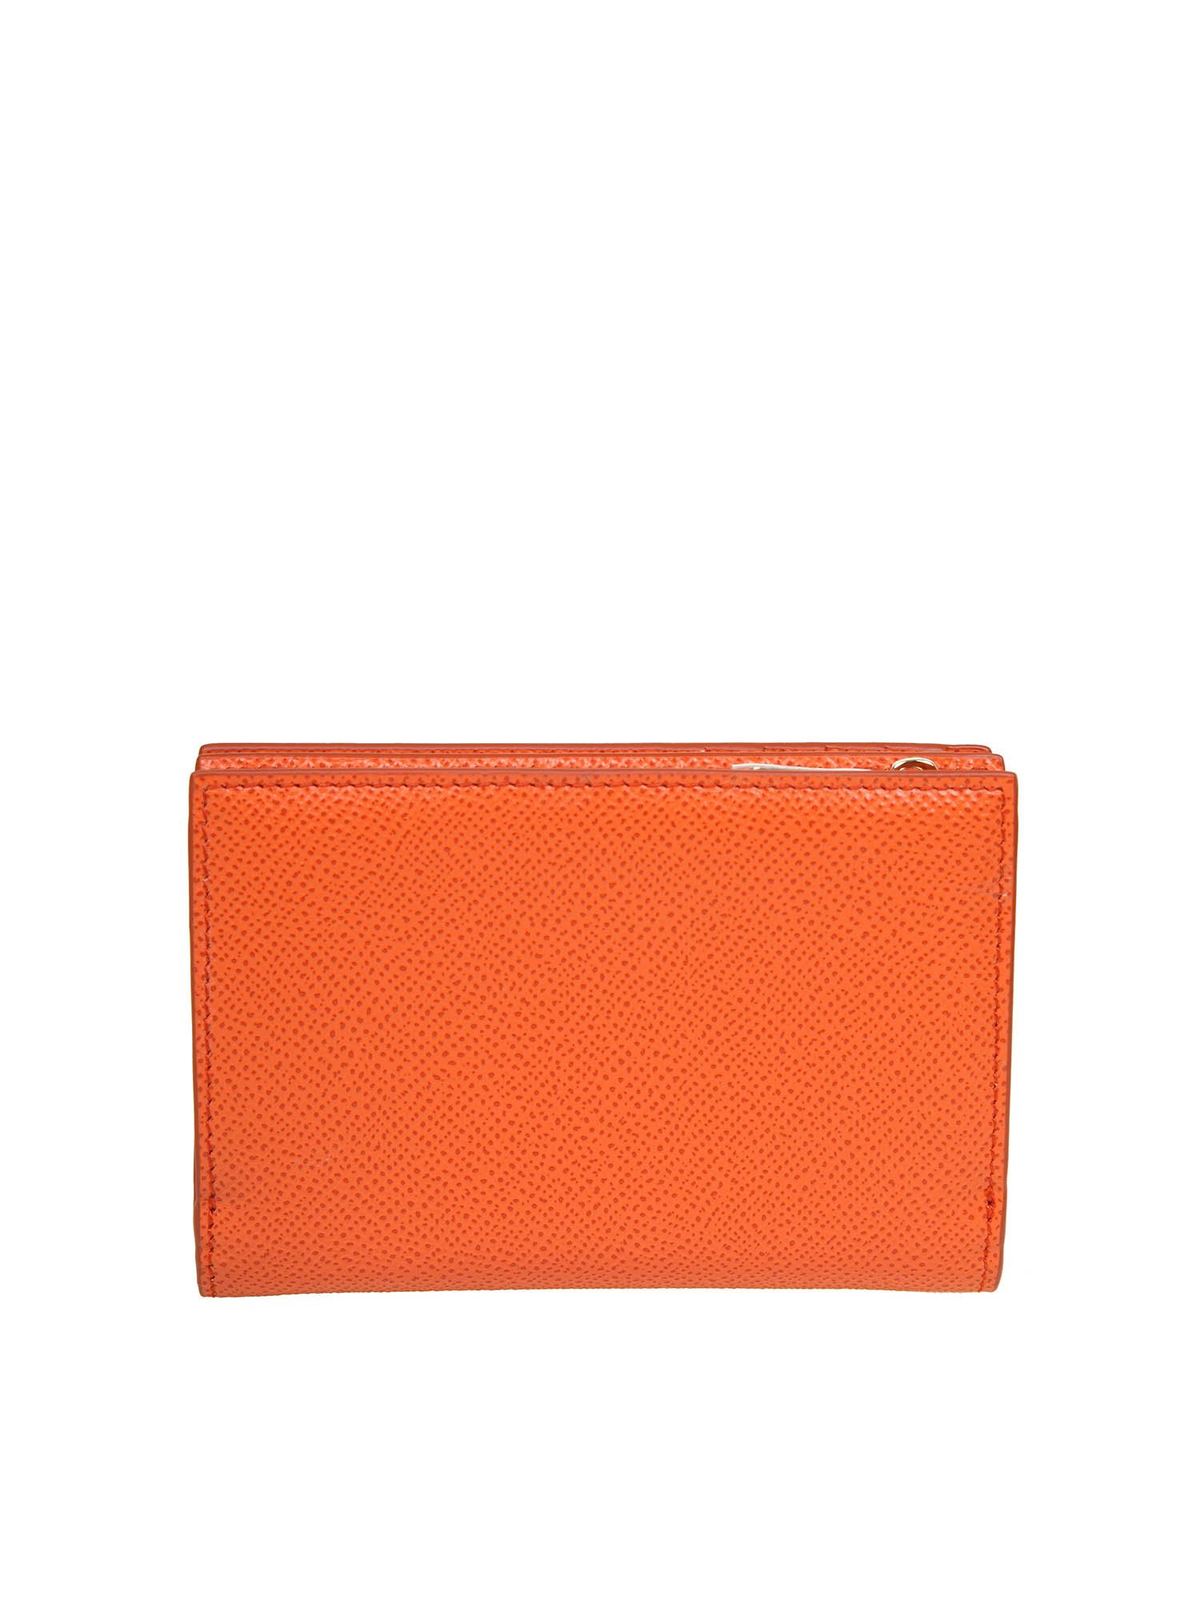 Wallets & purses Dolce & Gabbana - Jeweled DG wallet in orange ...